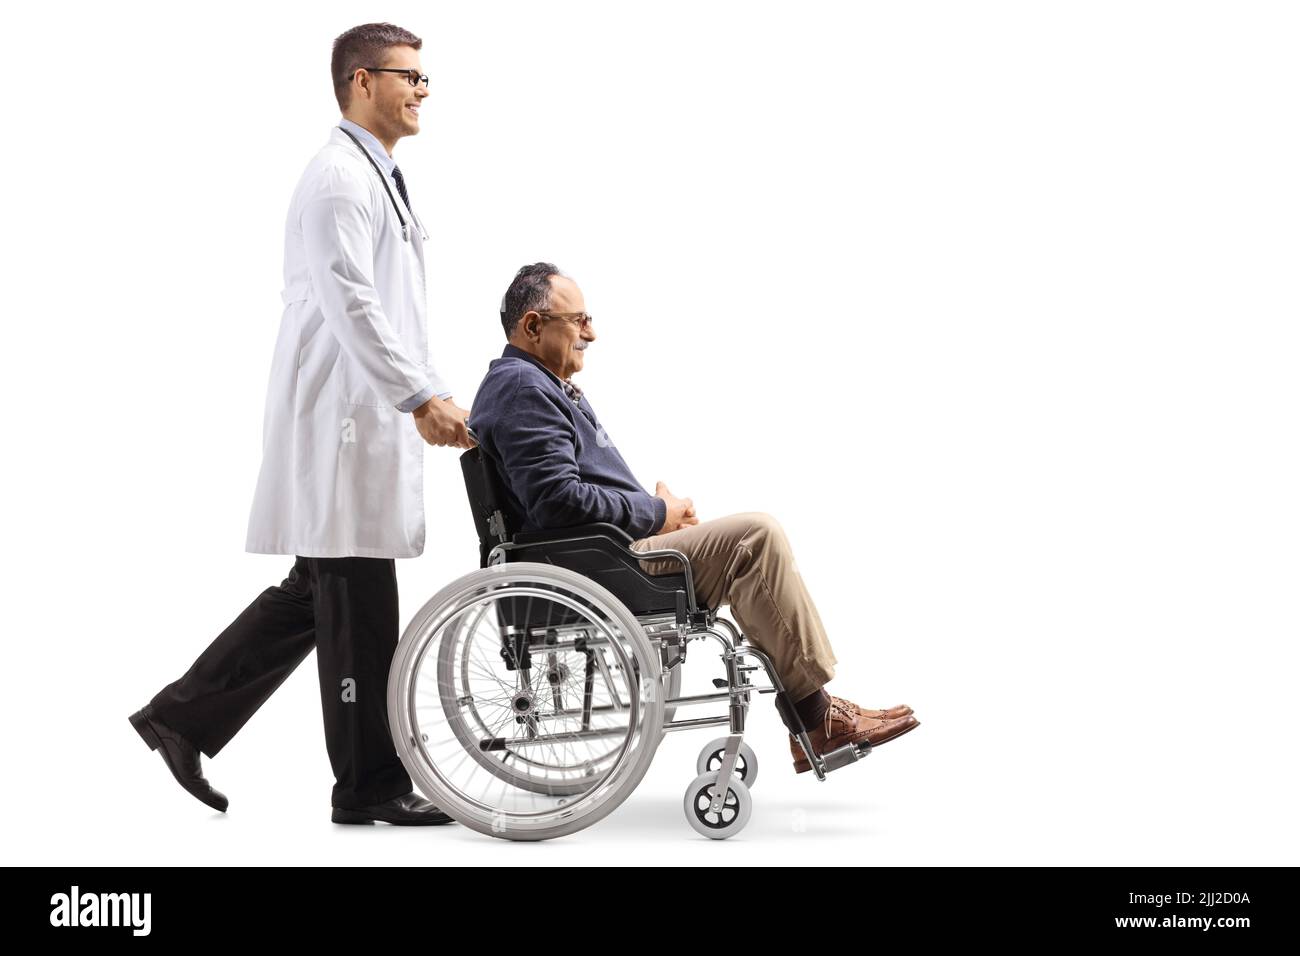 Prise de vue en profil d'un médecin marchant et poussant un homme mûr dans un fauteuil roulant isolé sur fond blanc Banque D'Images